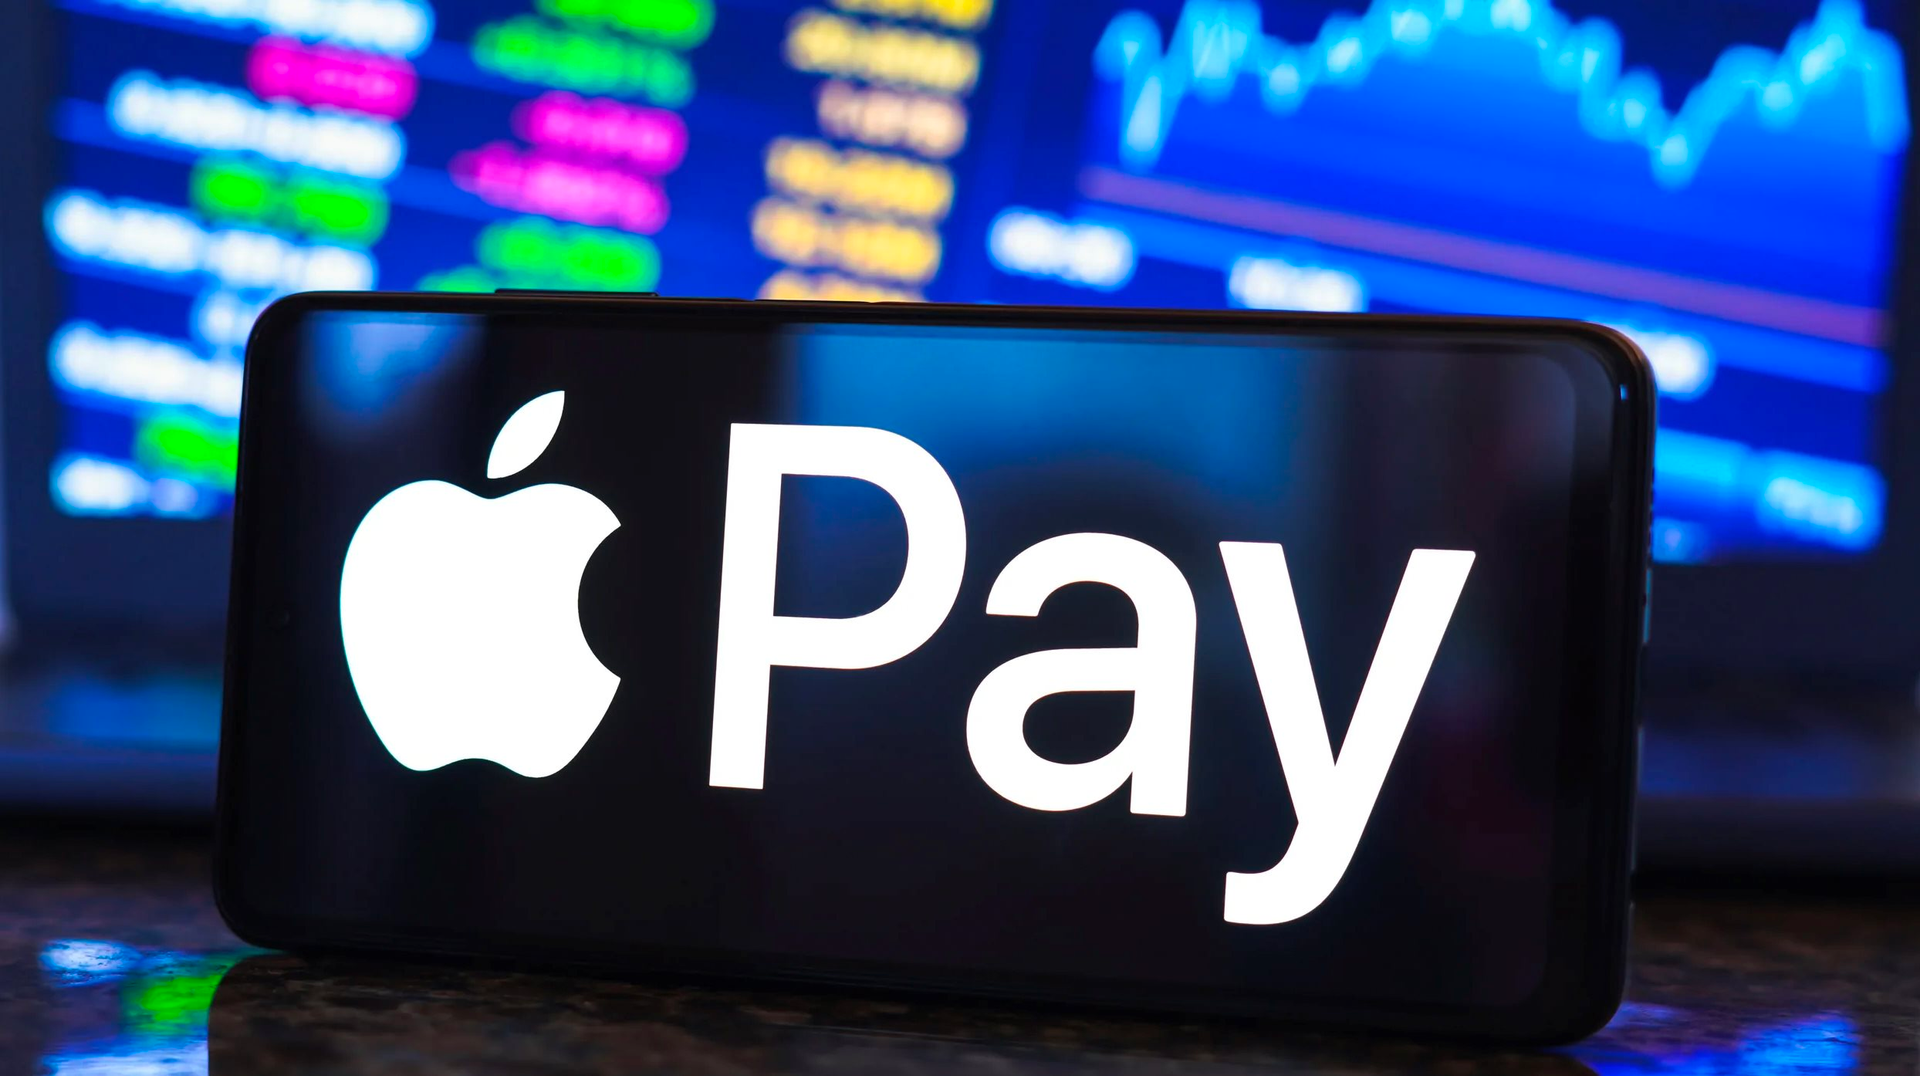 Apple Pay chính thức vào Việt Nam: Thanh toán được bằng iPhone, iPad, Mac, uống cafe, mua hàng Shopee hay đi taxi đều có thể sử dụng - Ảnh 1.